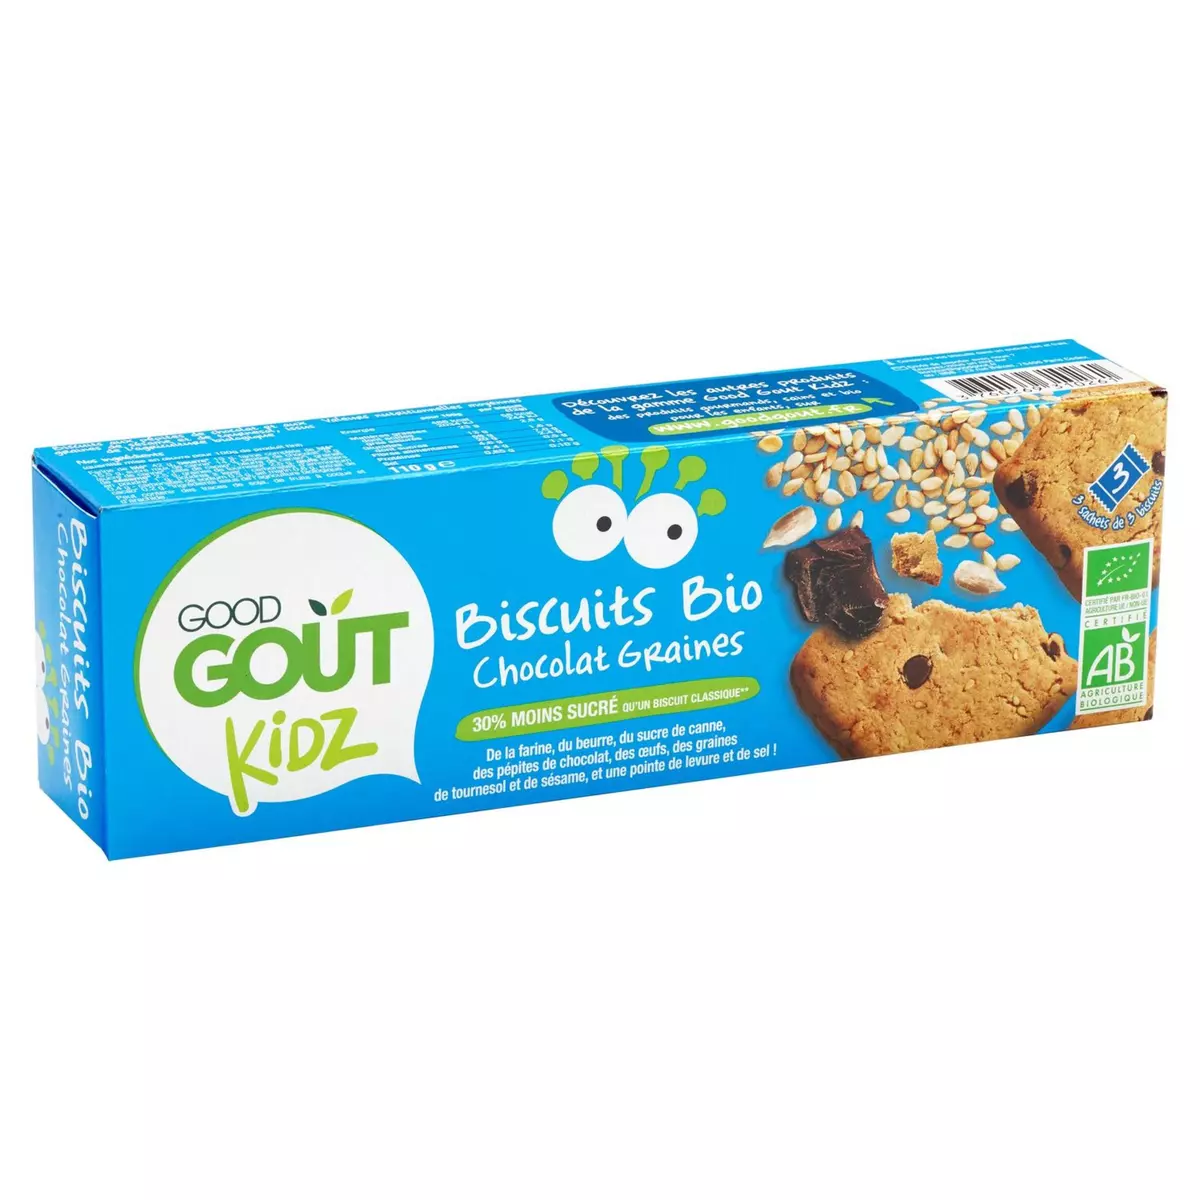 GOOD GOUT Kidz biscuits bio chocolat graines moins sucrés sachets fraîcheur 3x3 biscuits 110g